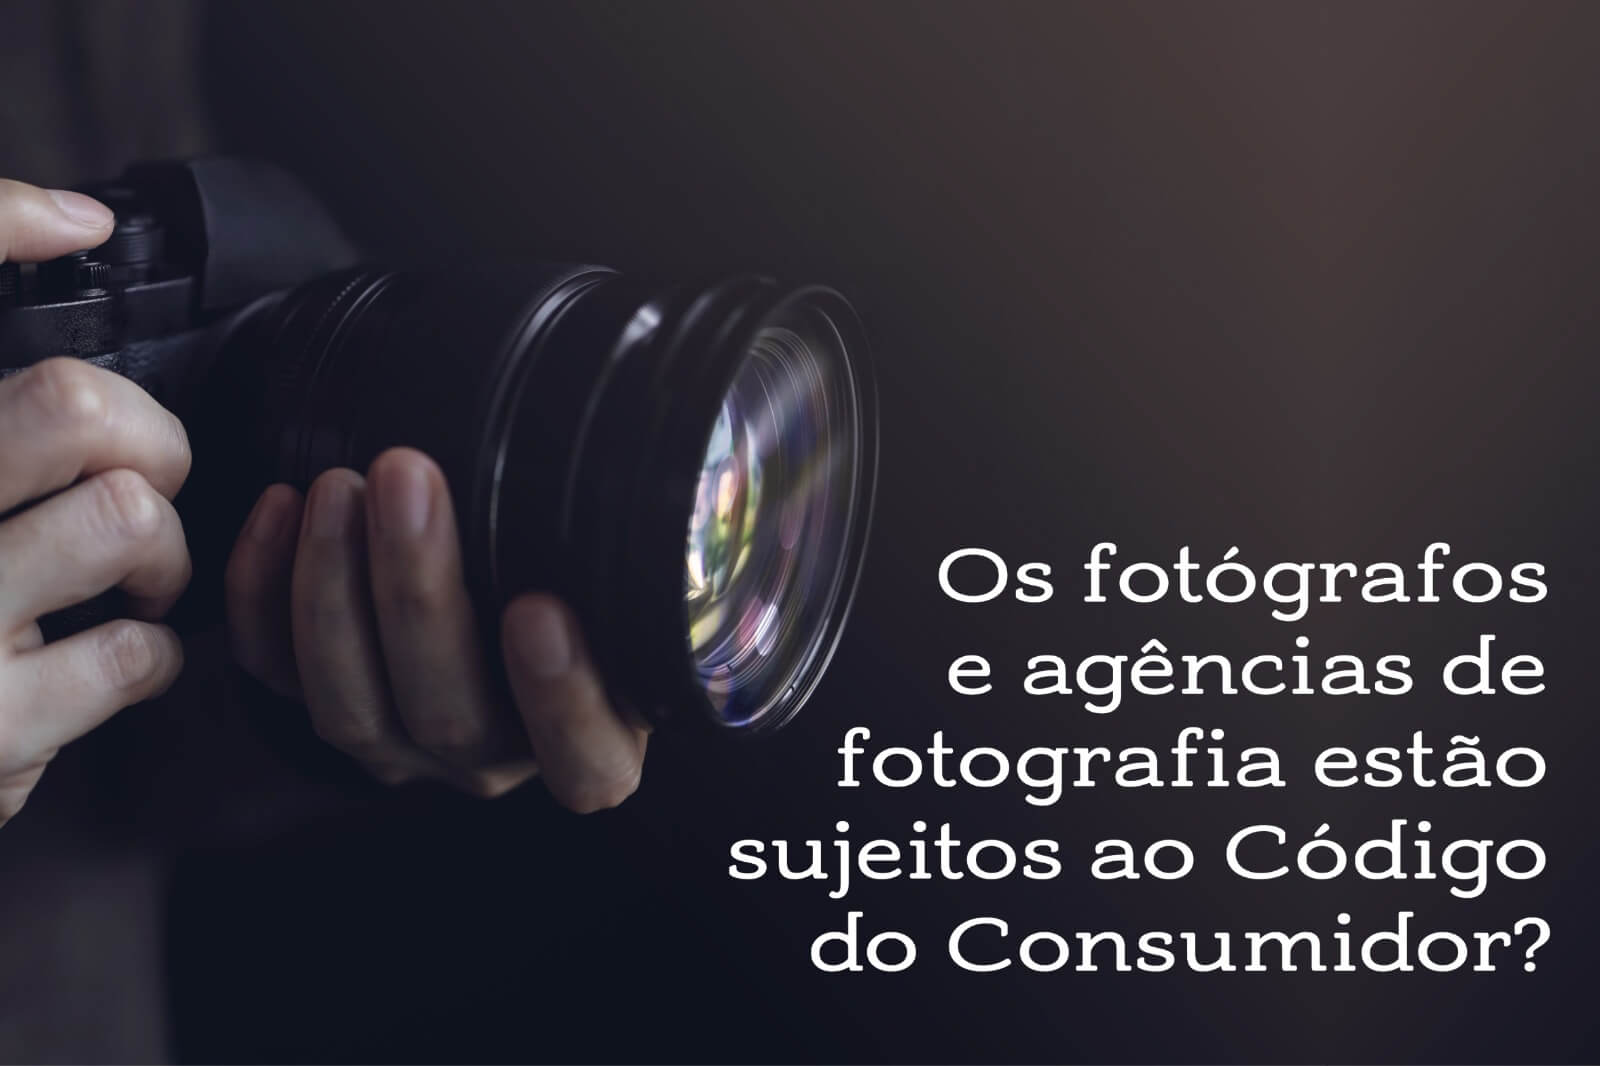 Os fotógrafos e agências de fotografia estão sujeitos ao Código do Consumidor?